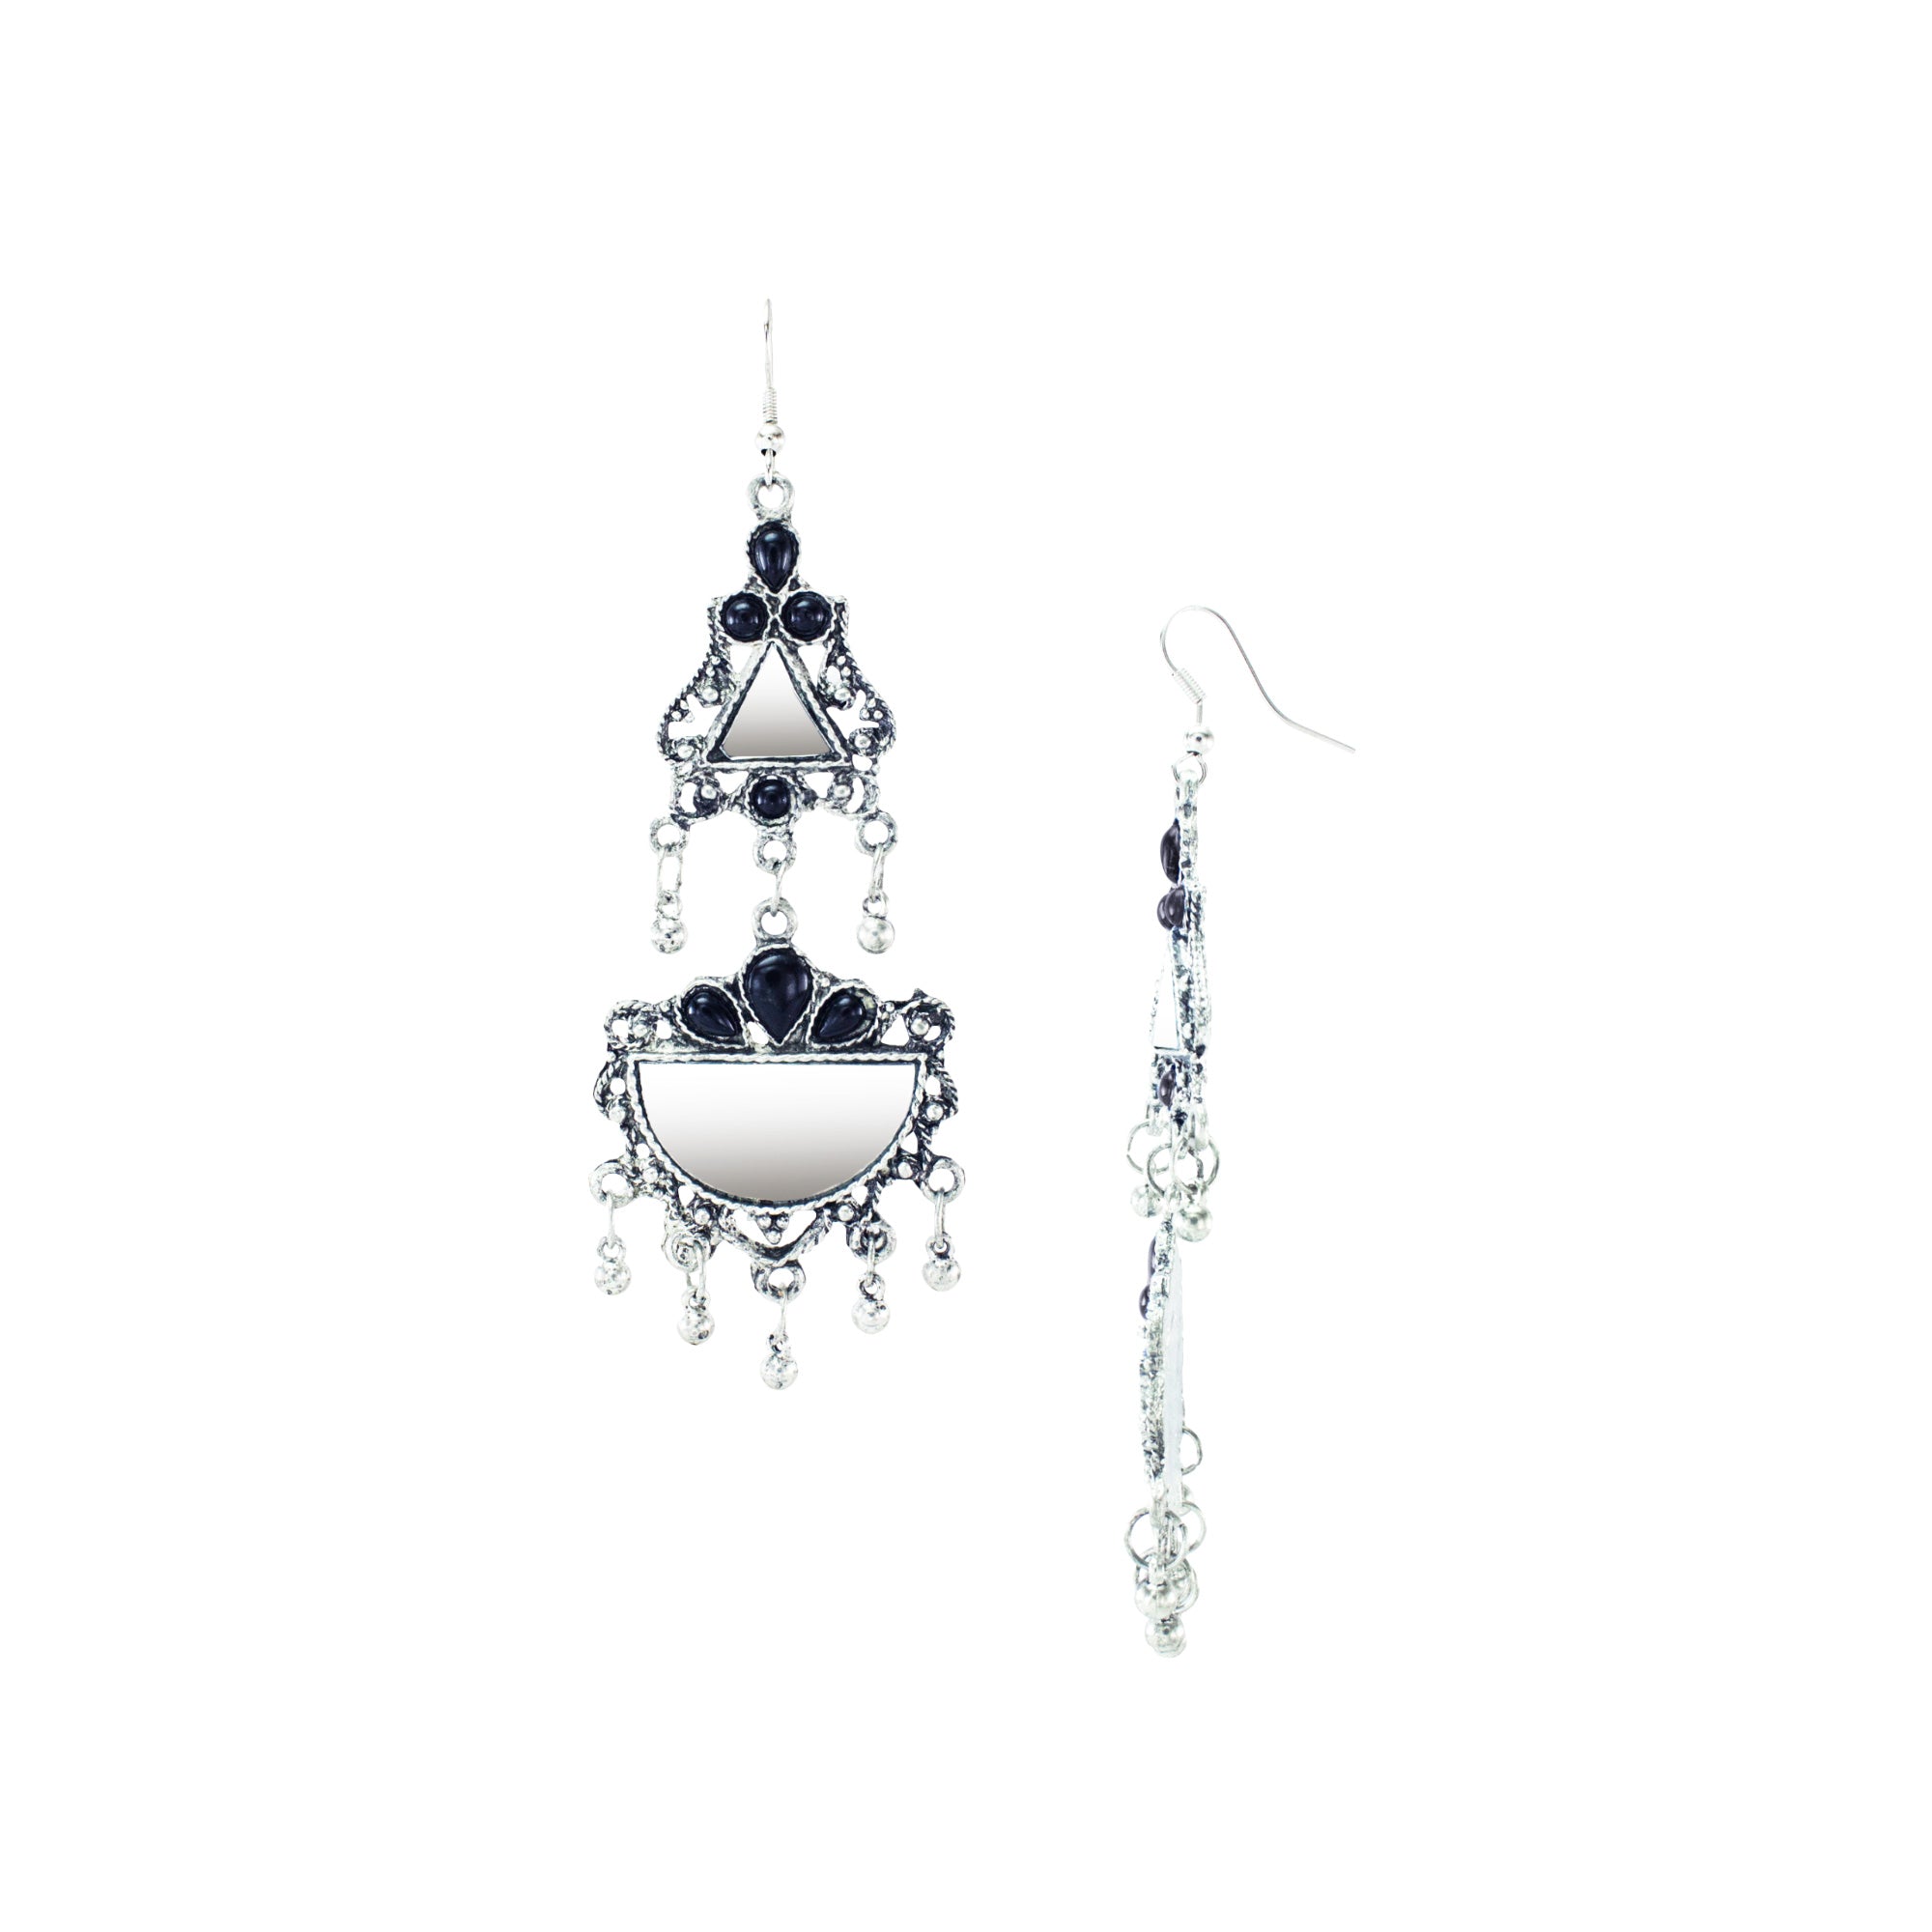 Abhinn Afghani Silver Oxidised Mirror With Black Stones Dangler Earrings for Women